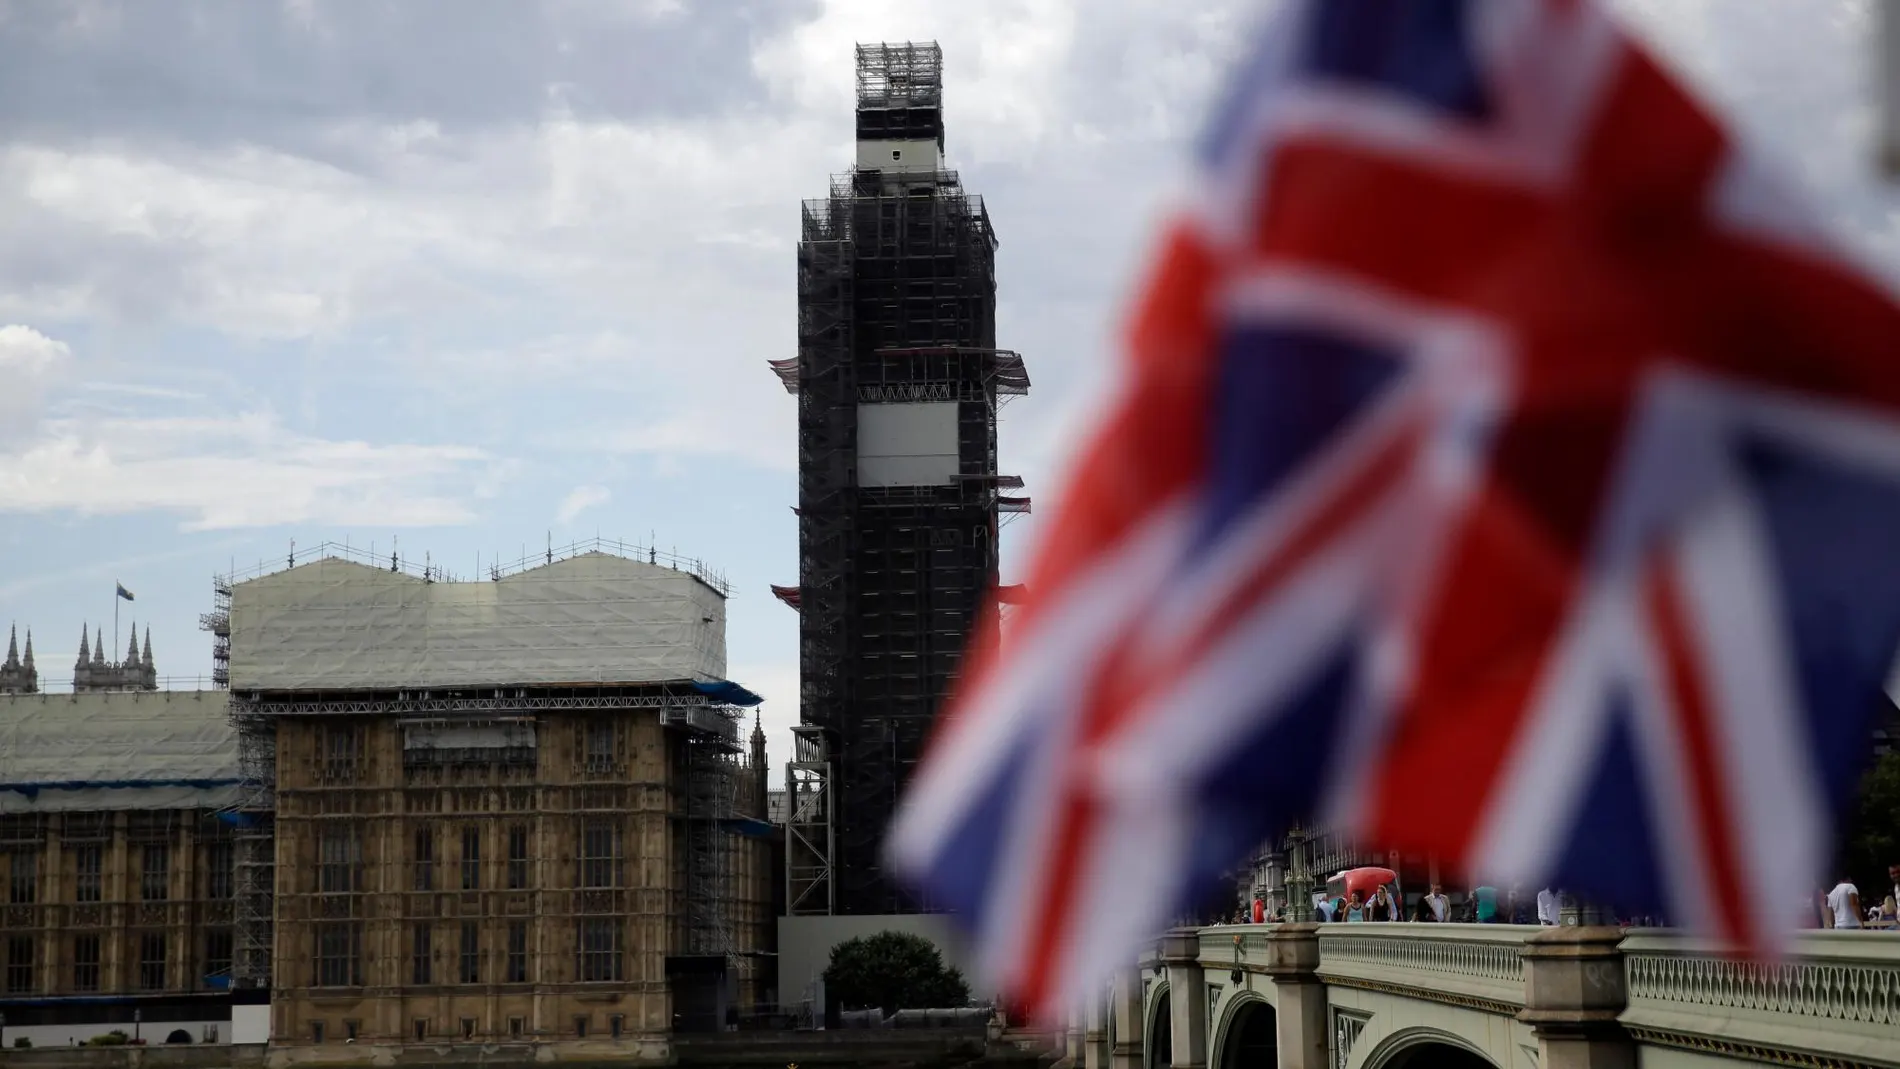 El Parlamento británico y la bandera de la Union Jack ondeando este miércoles /Ap